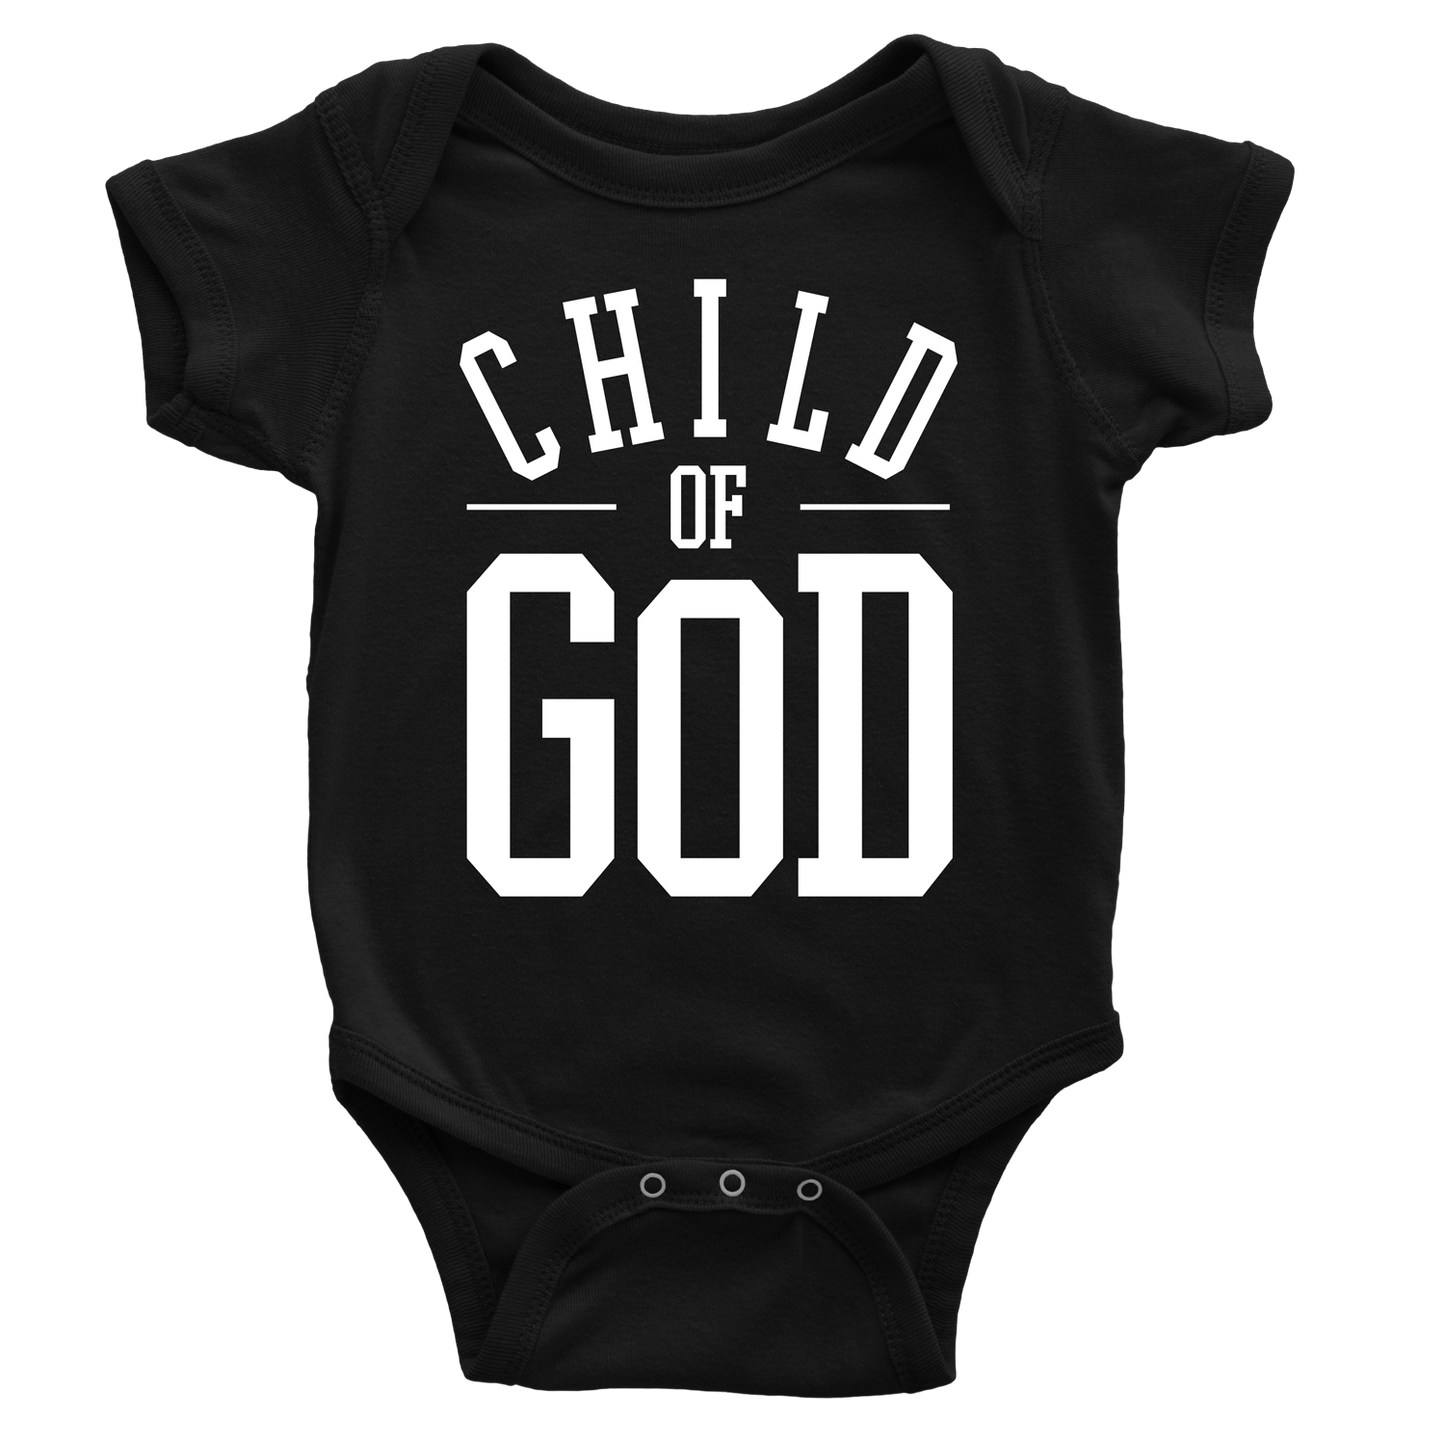 Child of God Onesie - Beacon Threads - 3-6M / Black - 1